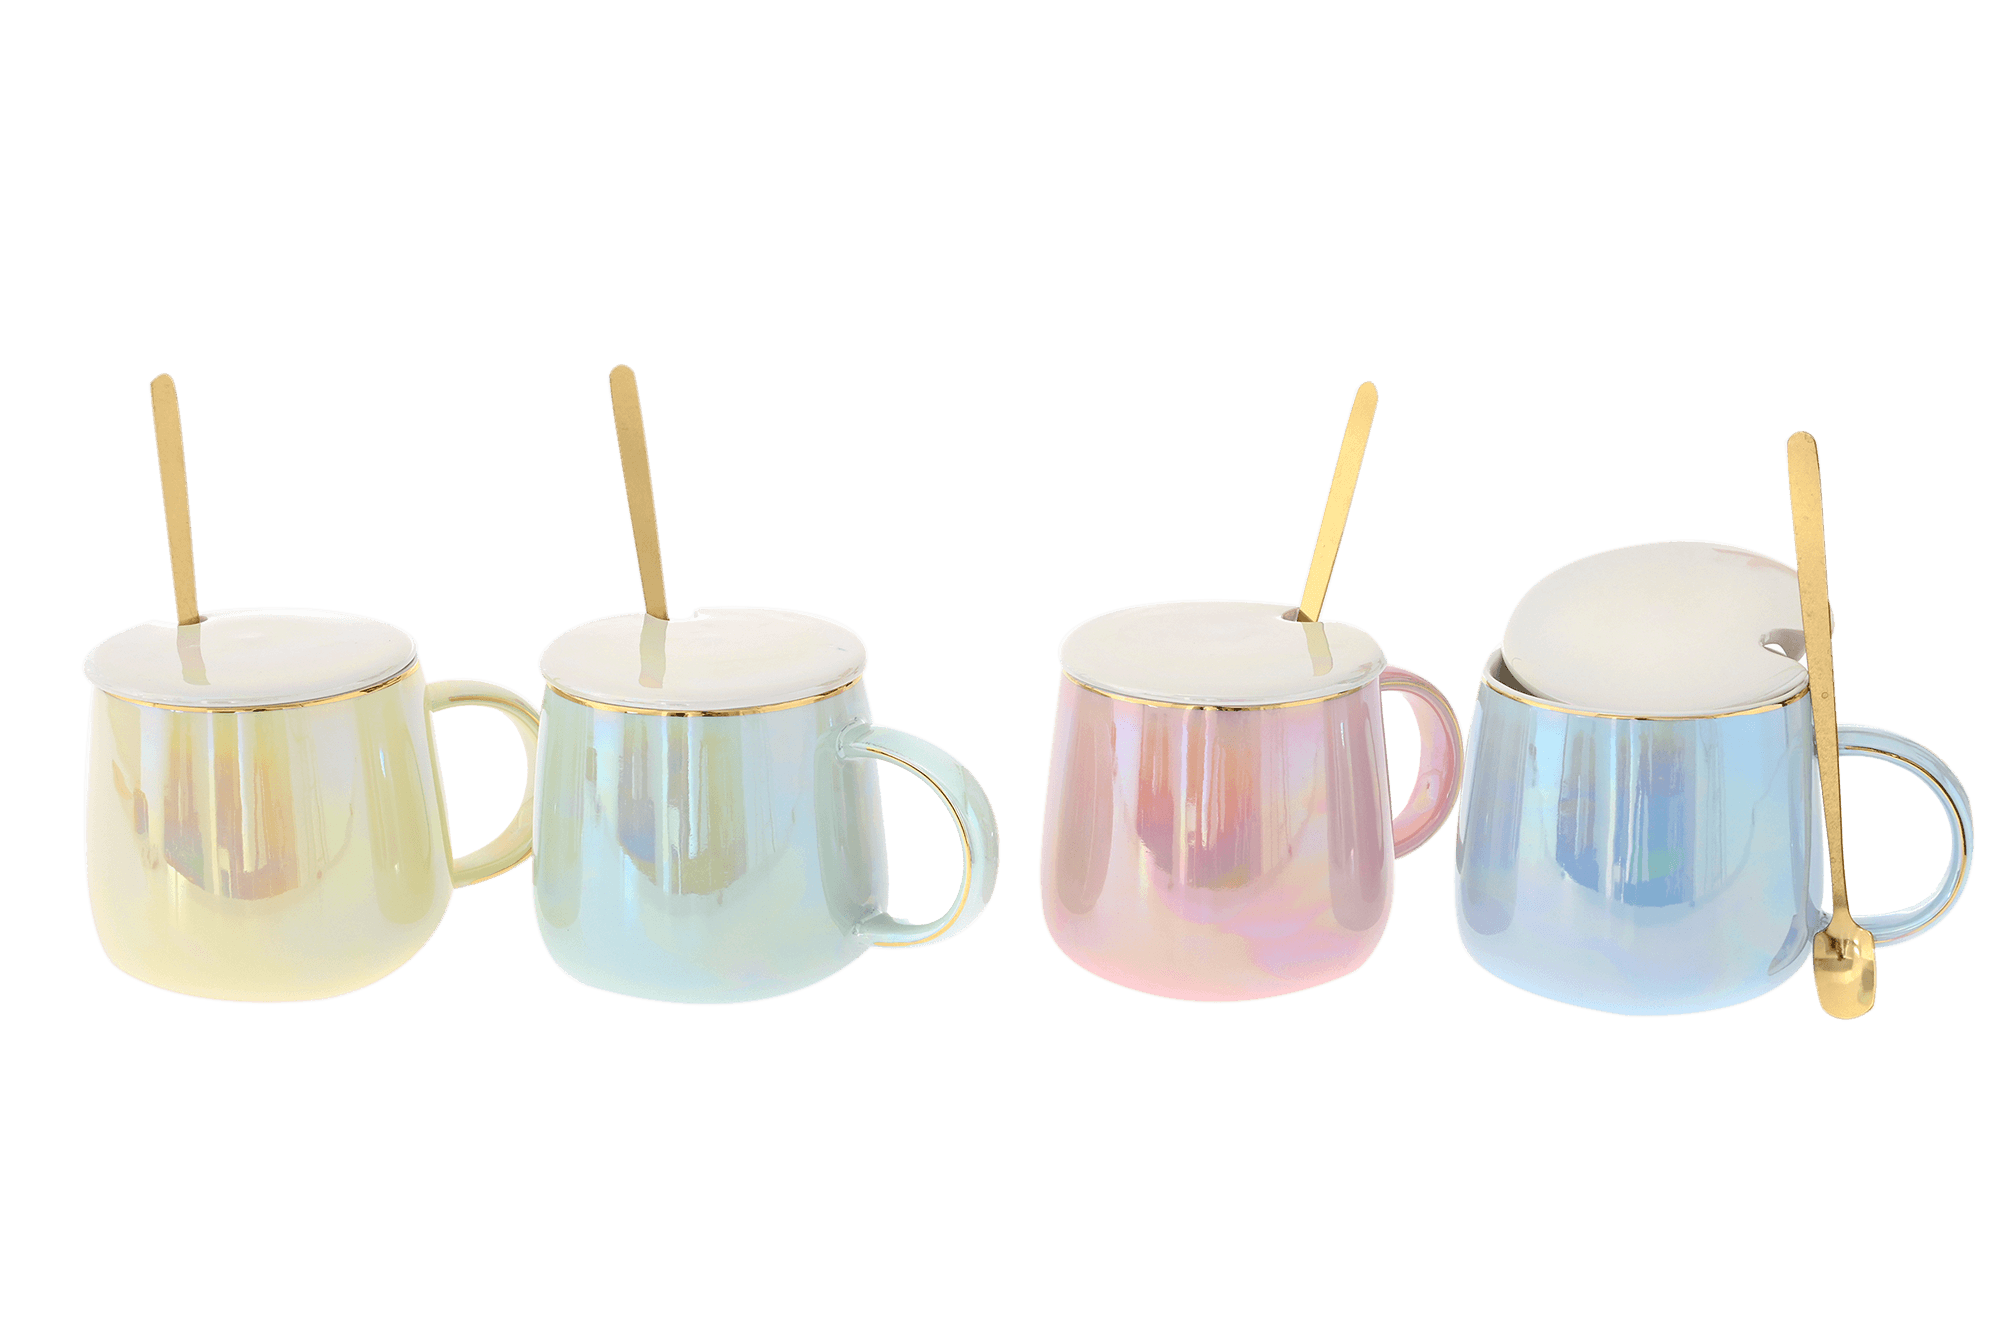 Κεραμική Κούπα σε μεταλιζέ χρώματα - Καφεκοπτεία Λουμίδη